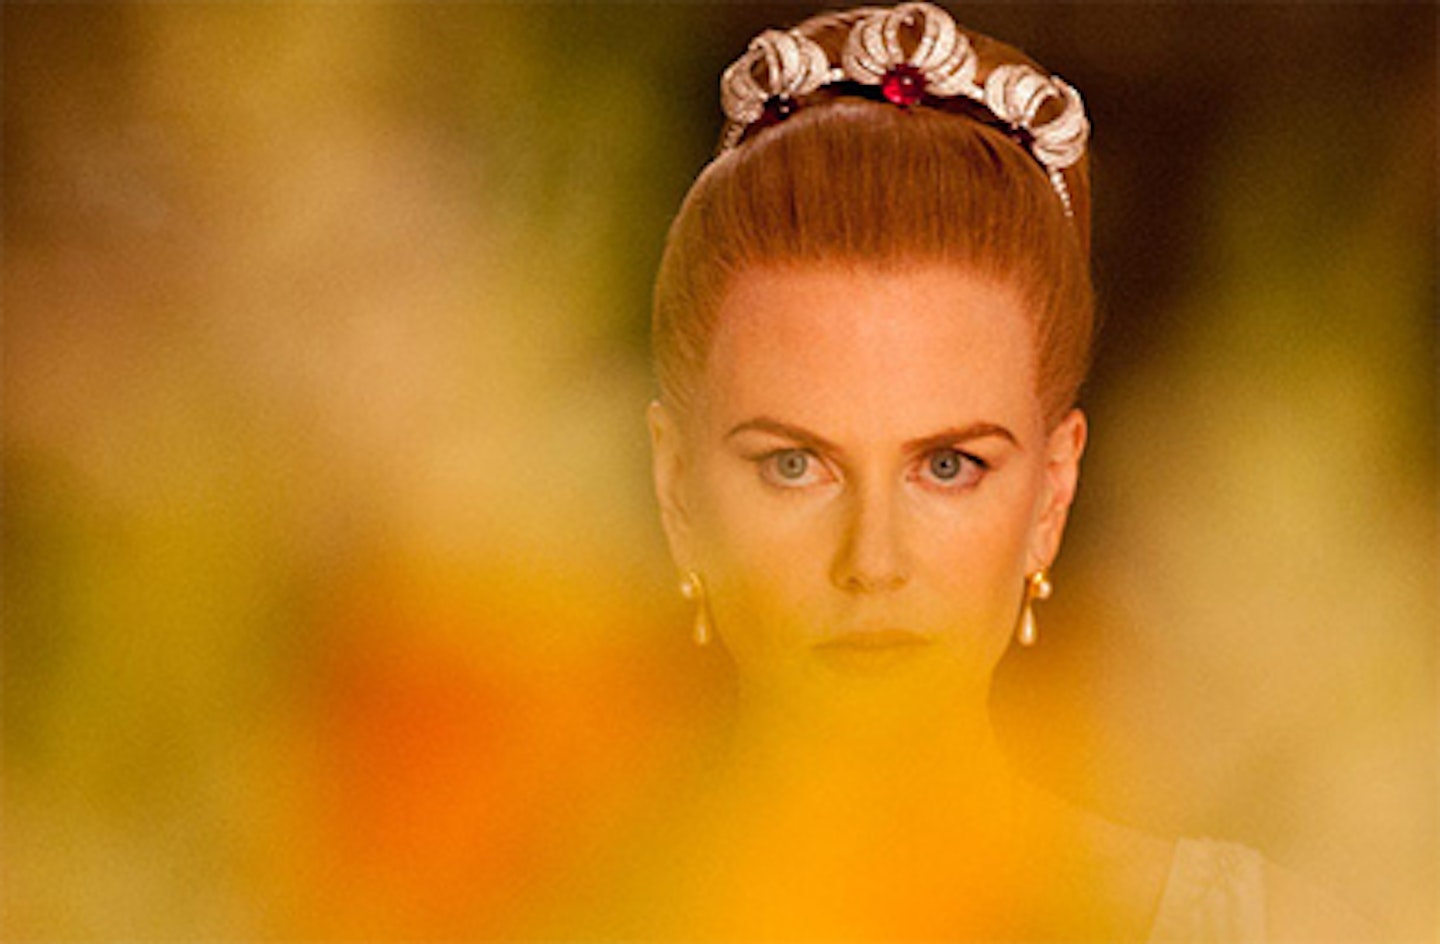 Cannes 2013: Nicole Kidman's Grace Kelly